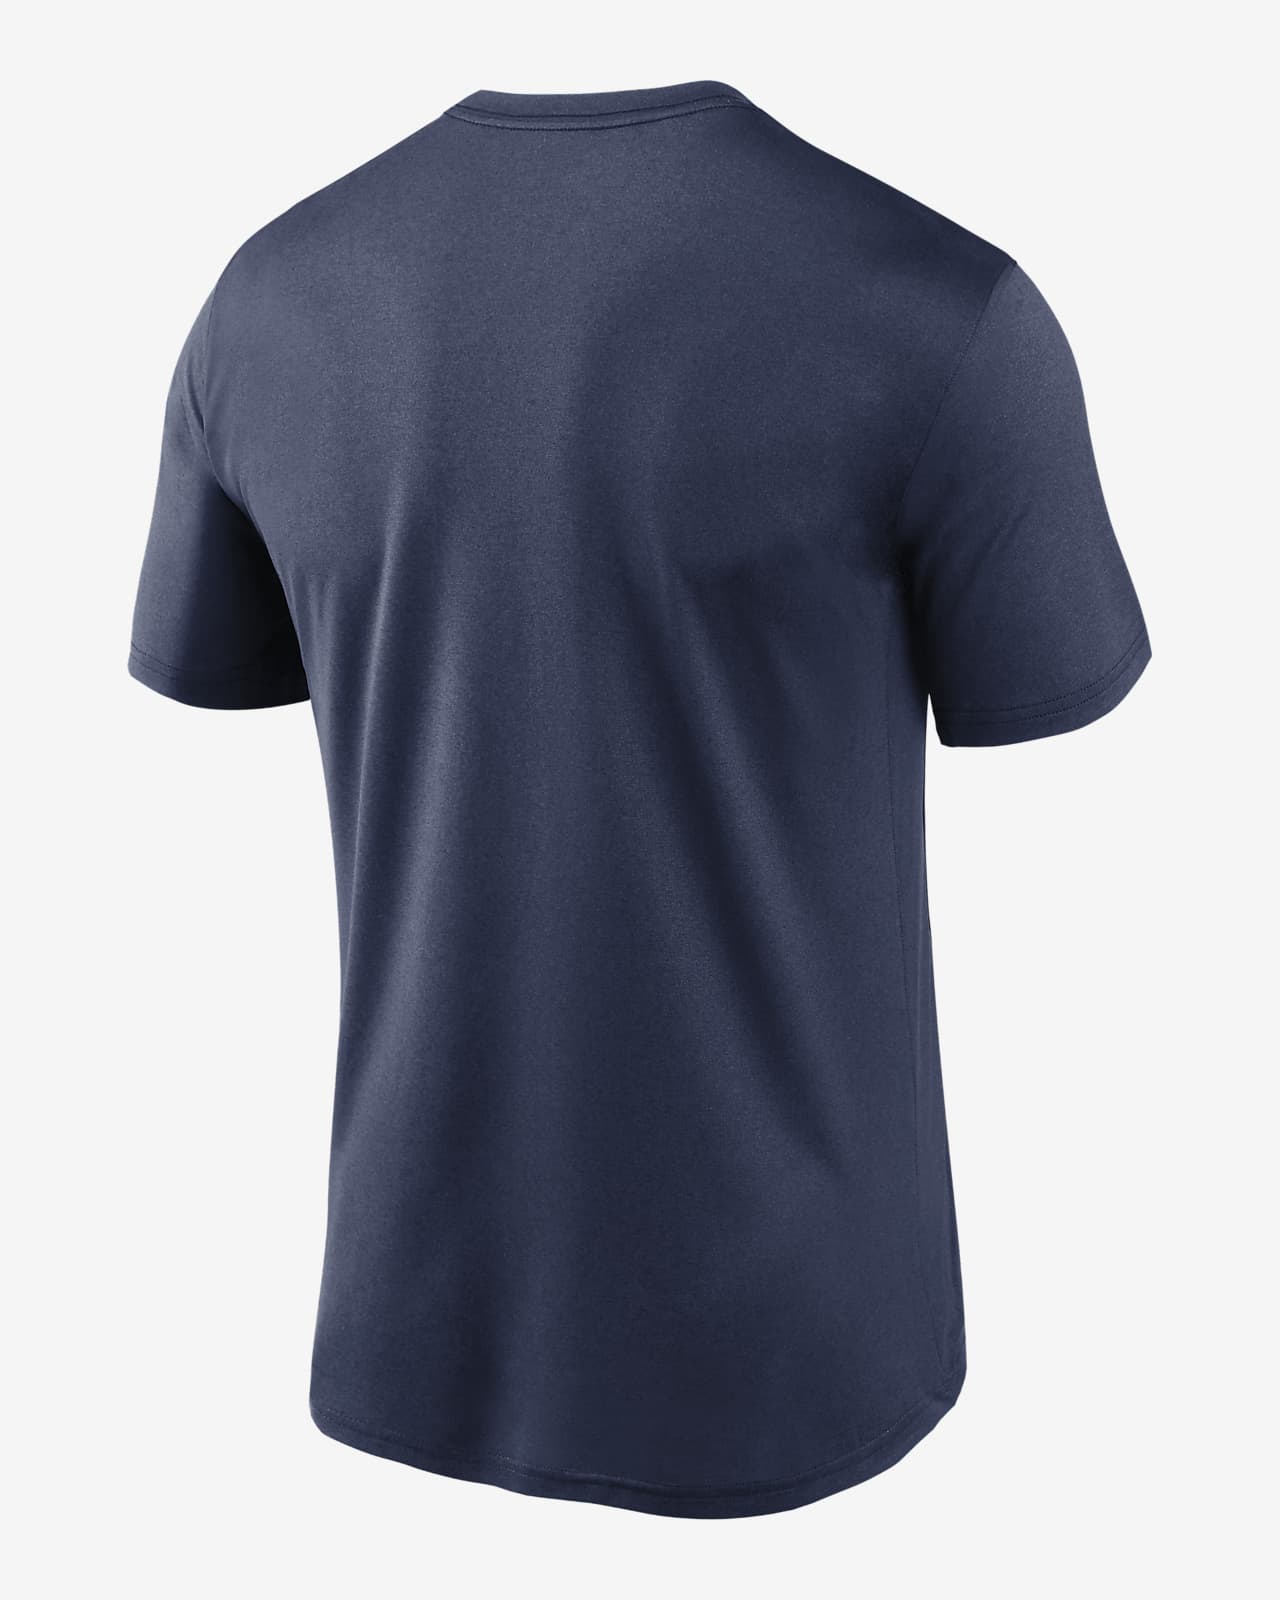 Nike Dri-FIT Logo Legend (MLB Detroit Tigers) Men's T-Shirt. Nike.com